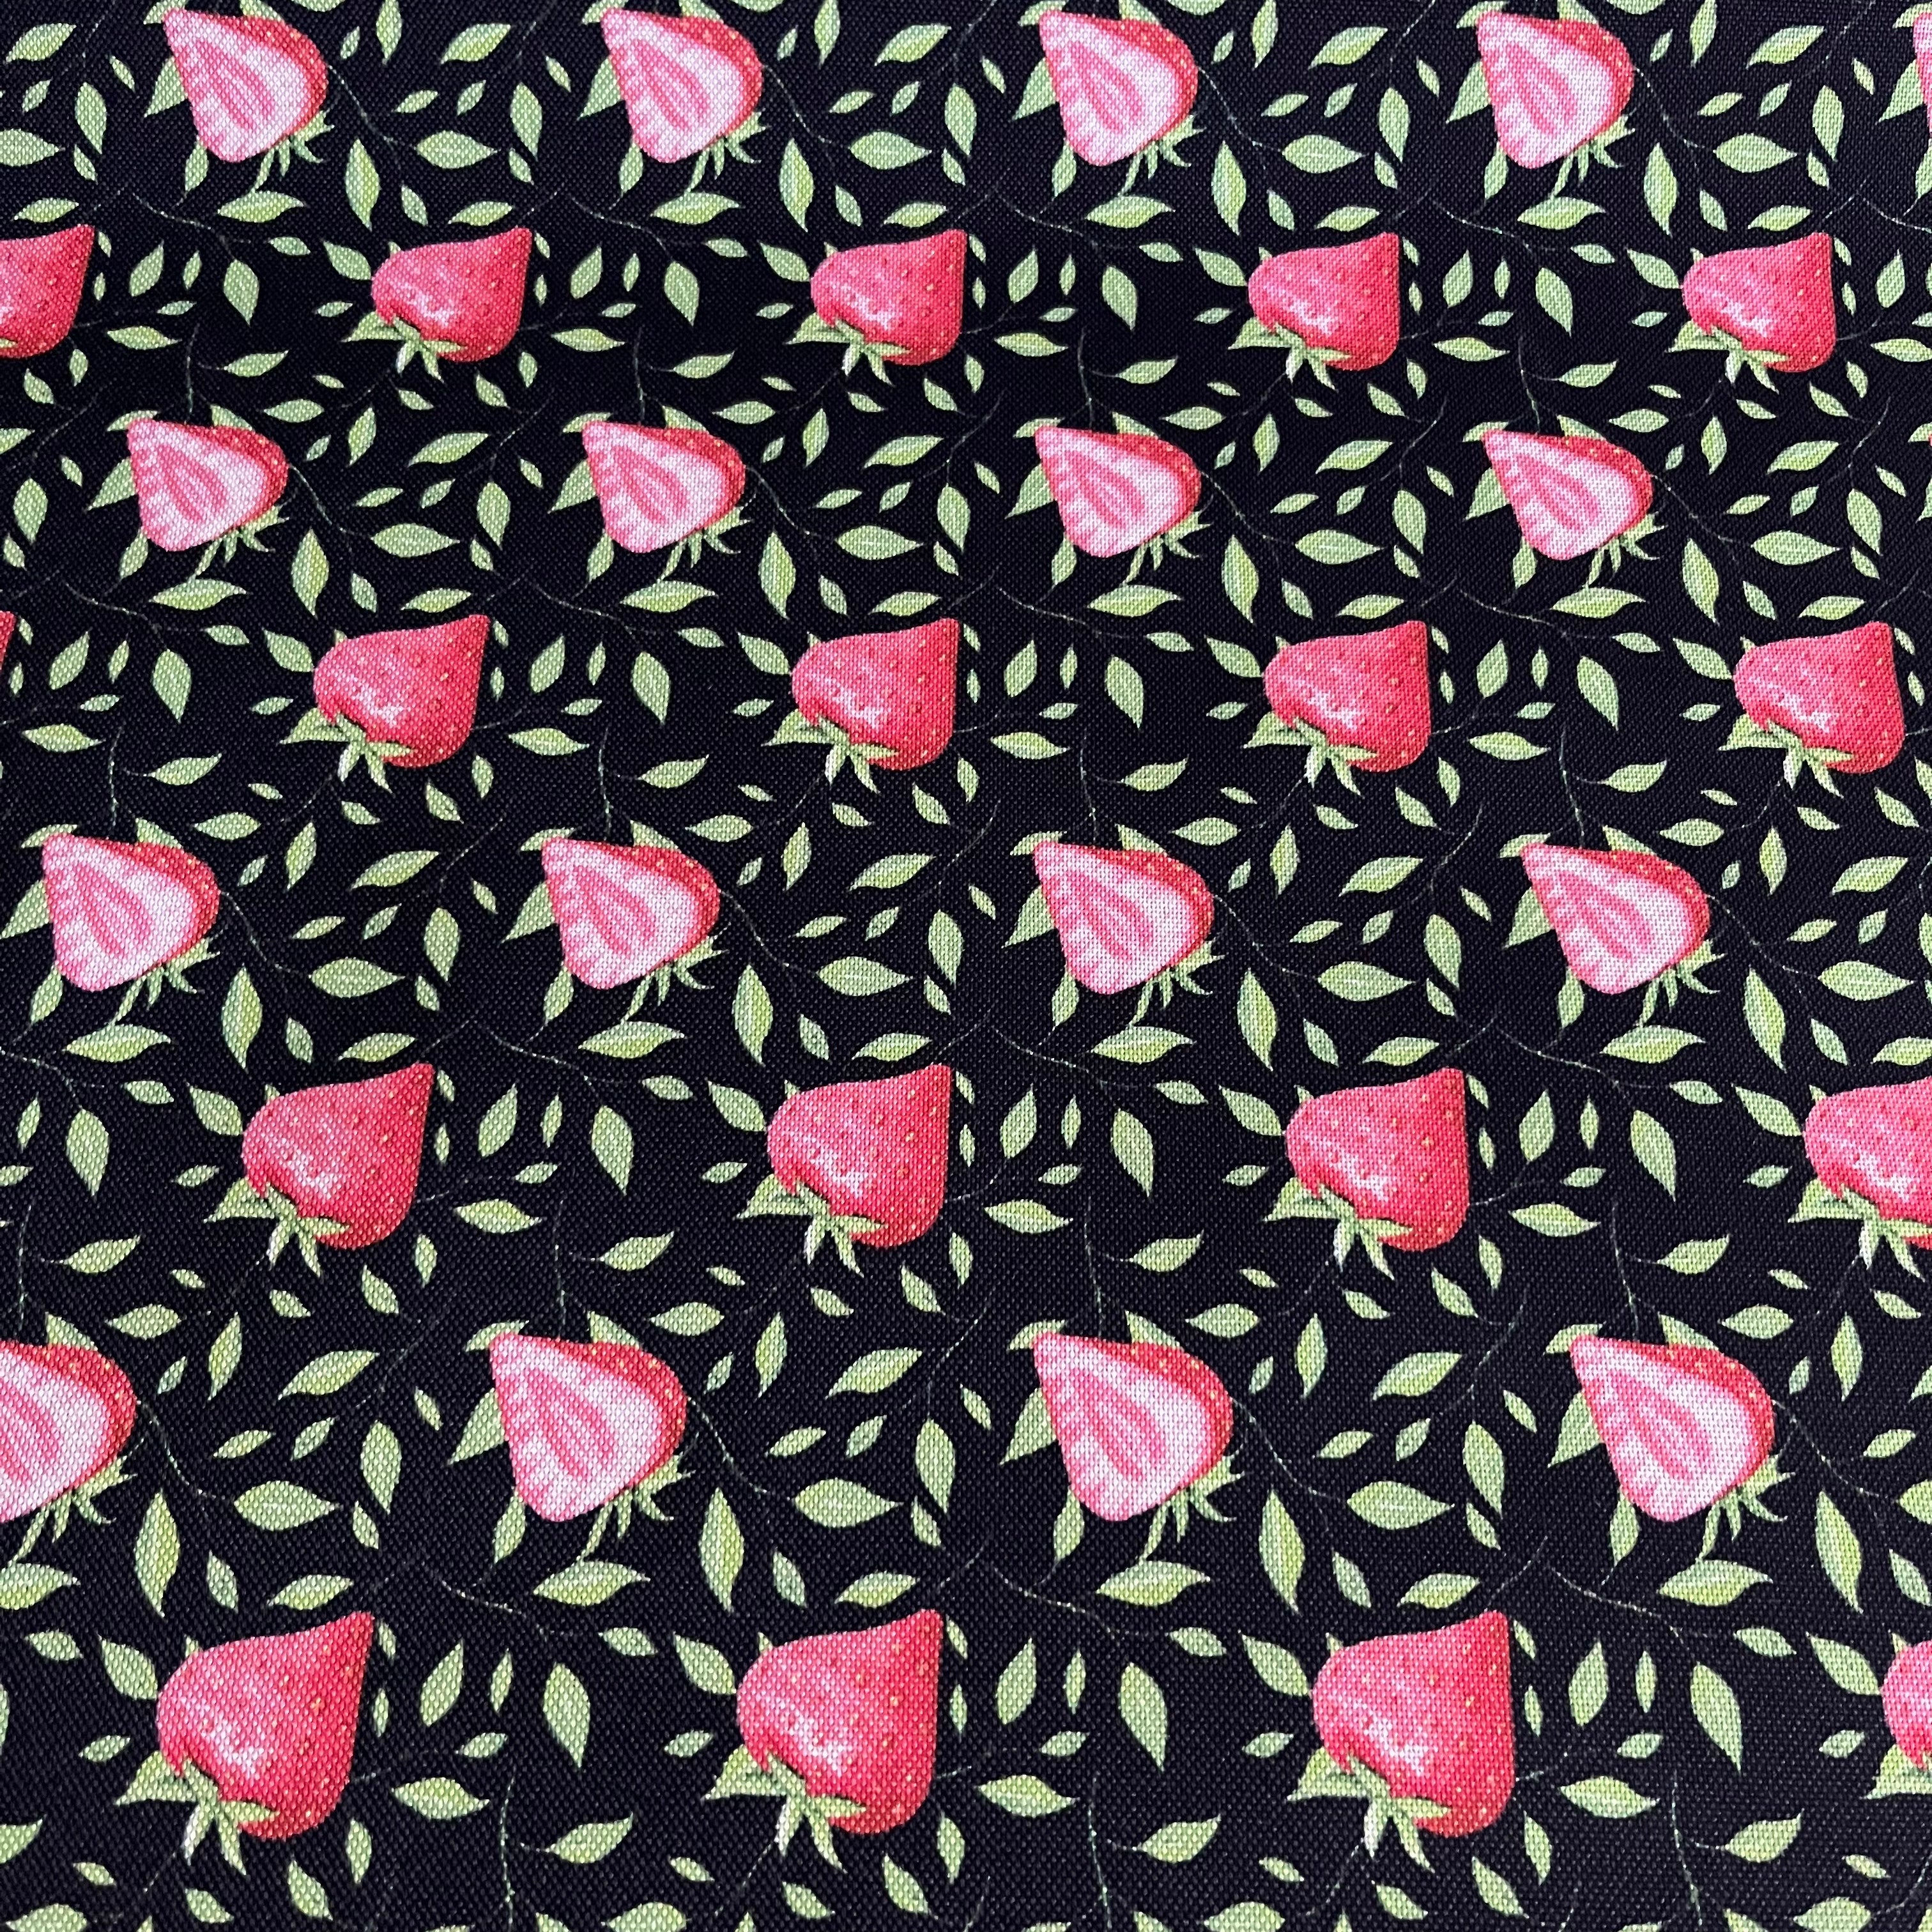 Canvas beschichtet - Erdbeeren Fabric poshpinks